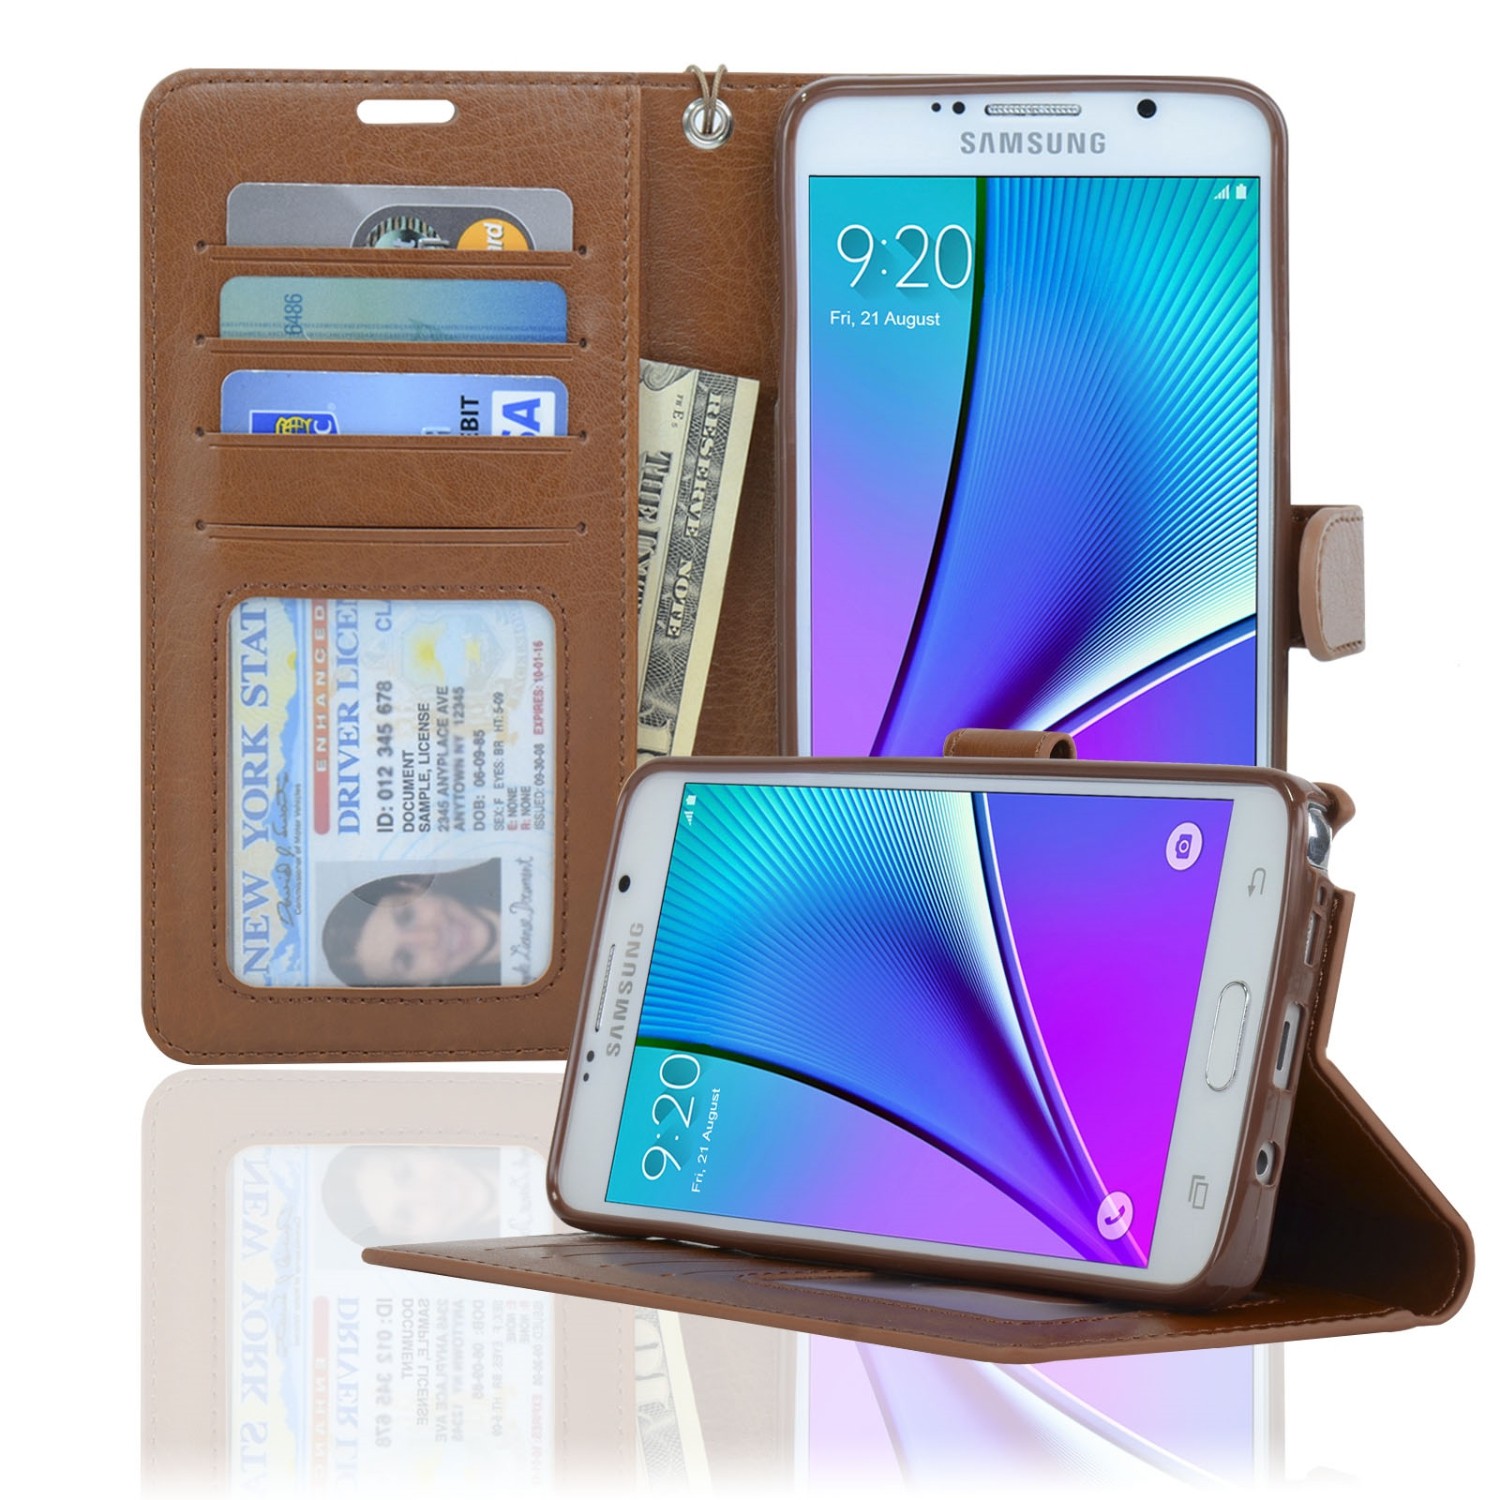 Samsung Galaxy Note 5 Case